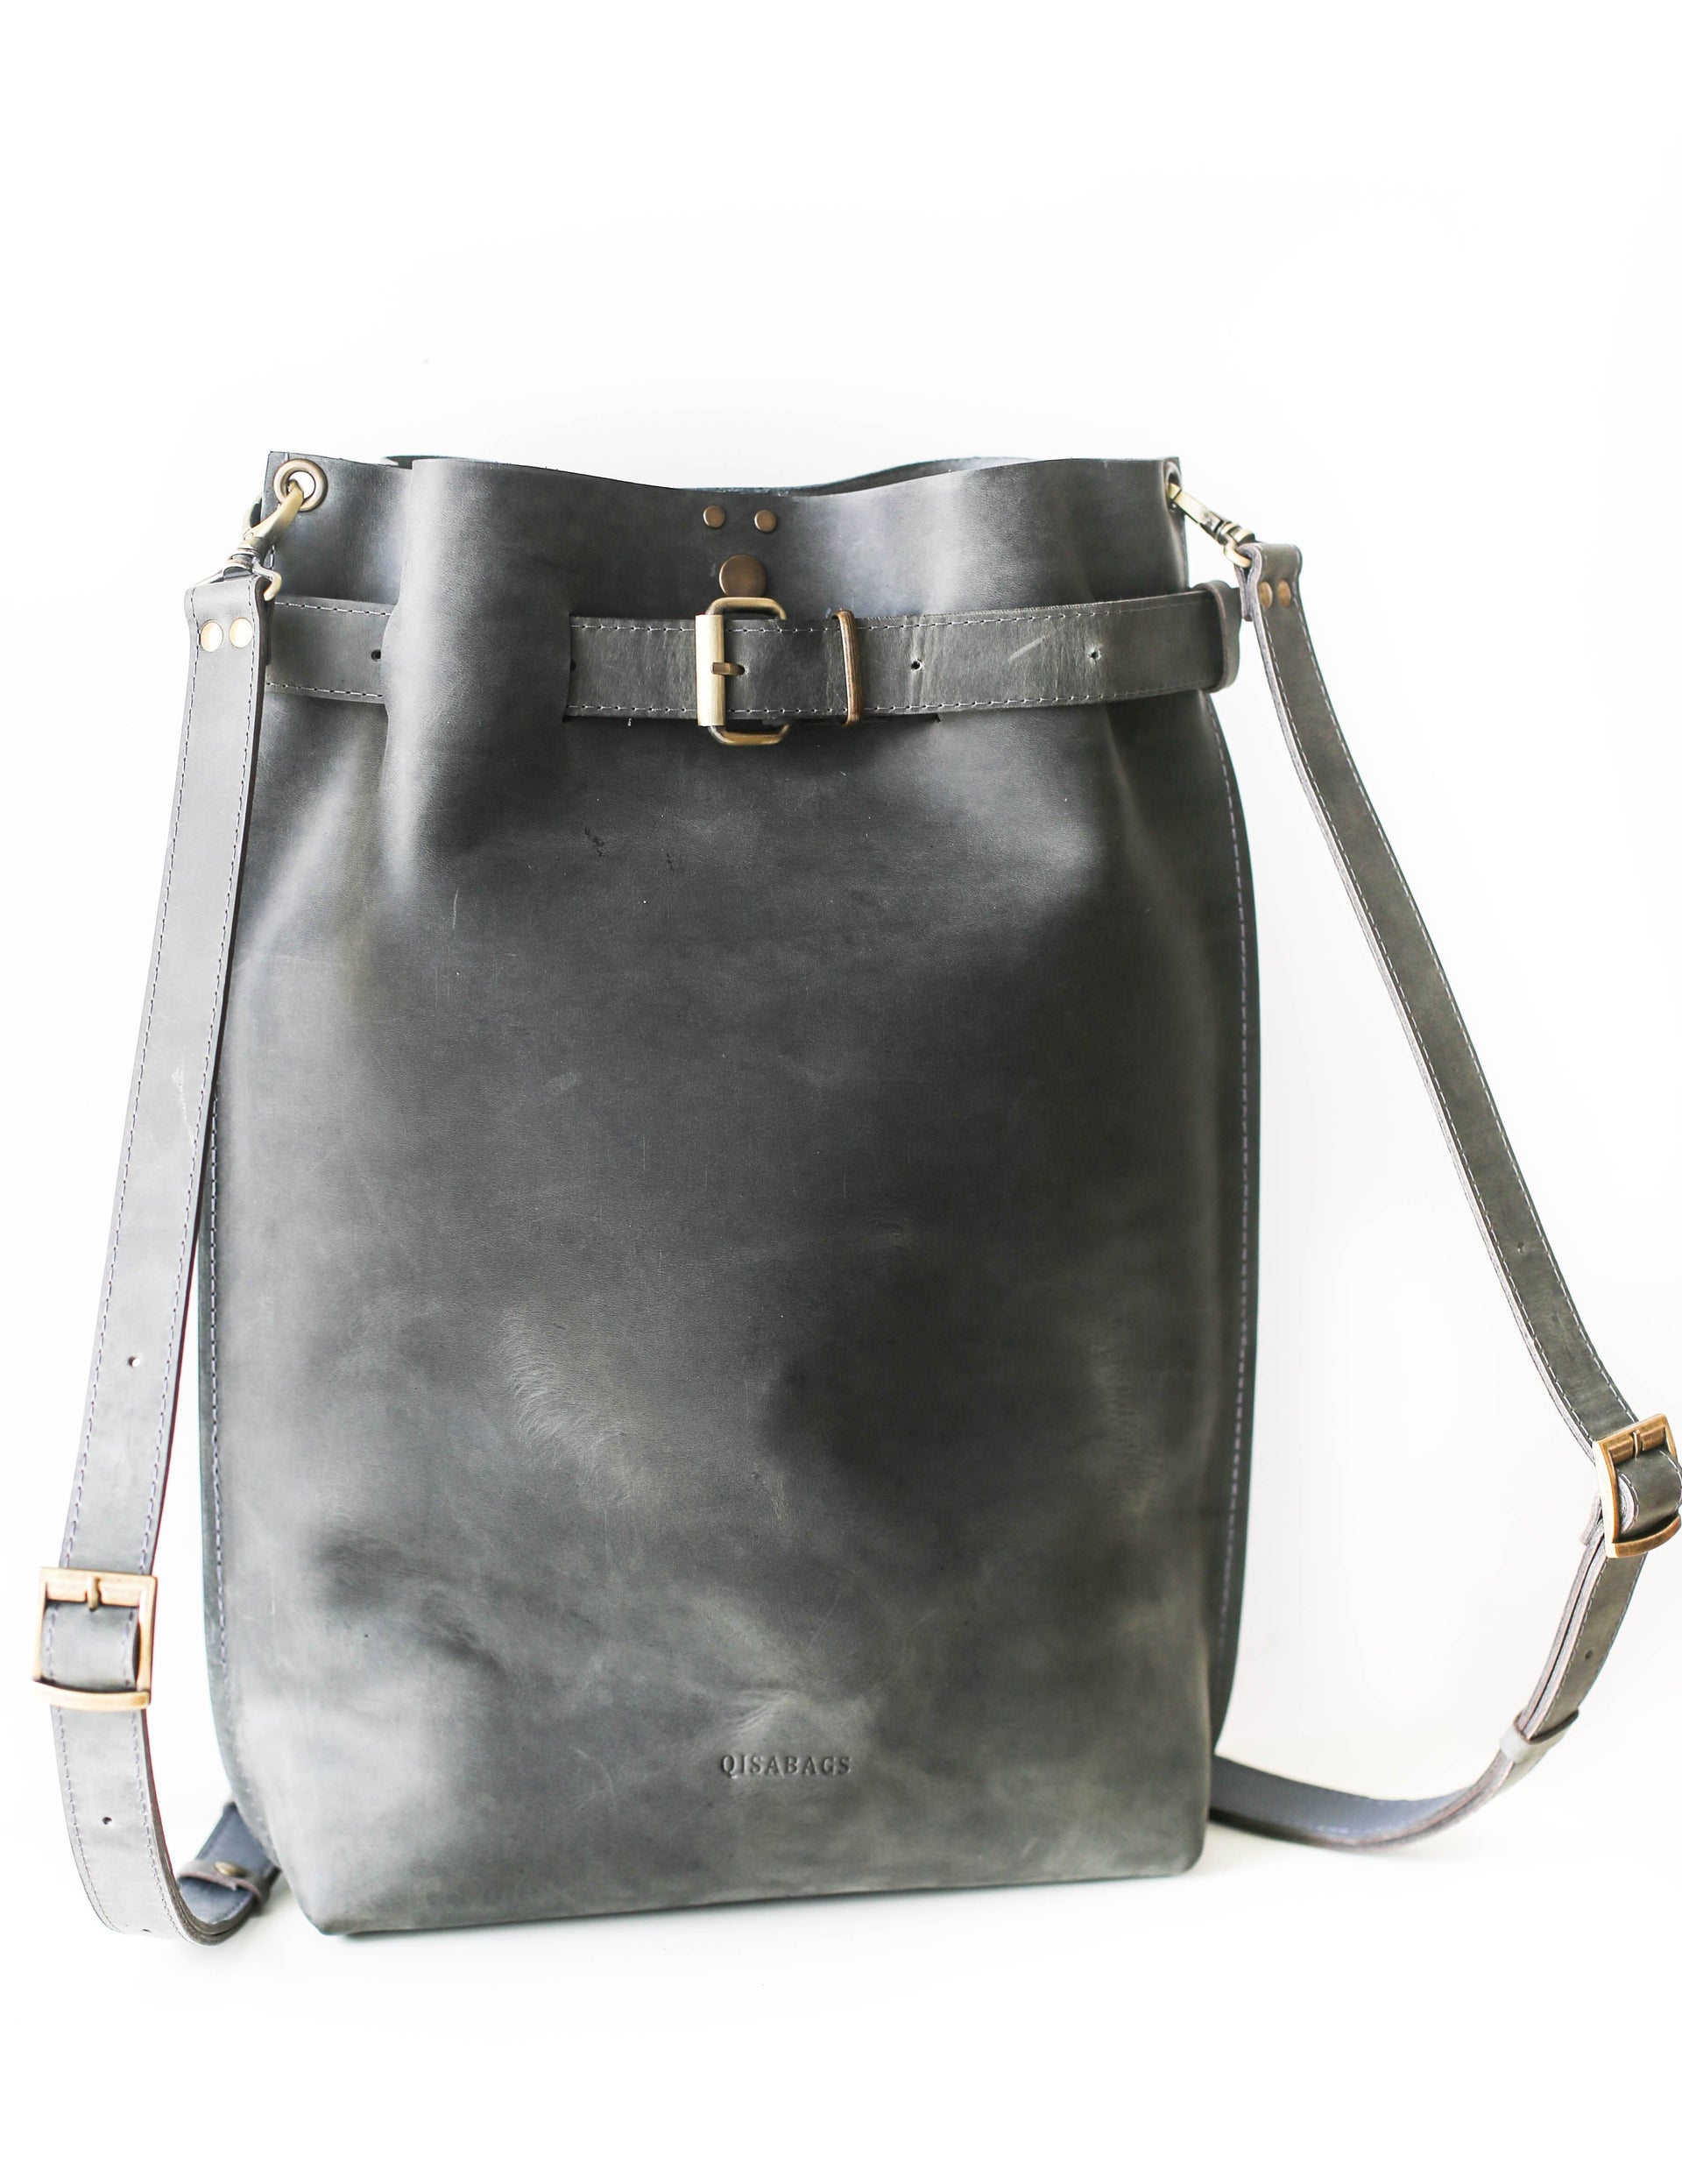 Minimalist leather backpack